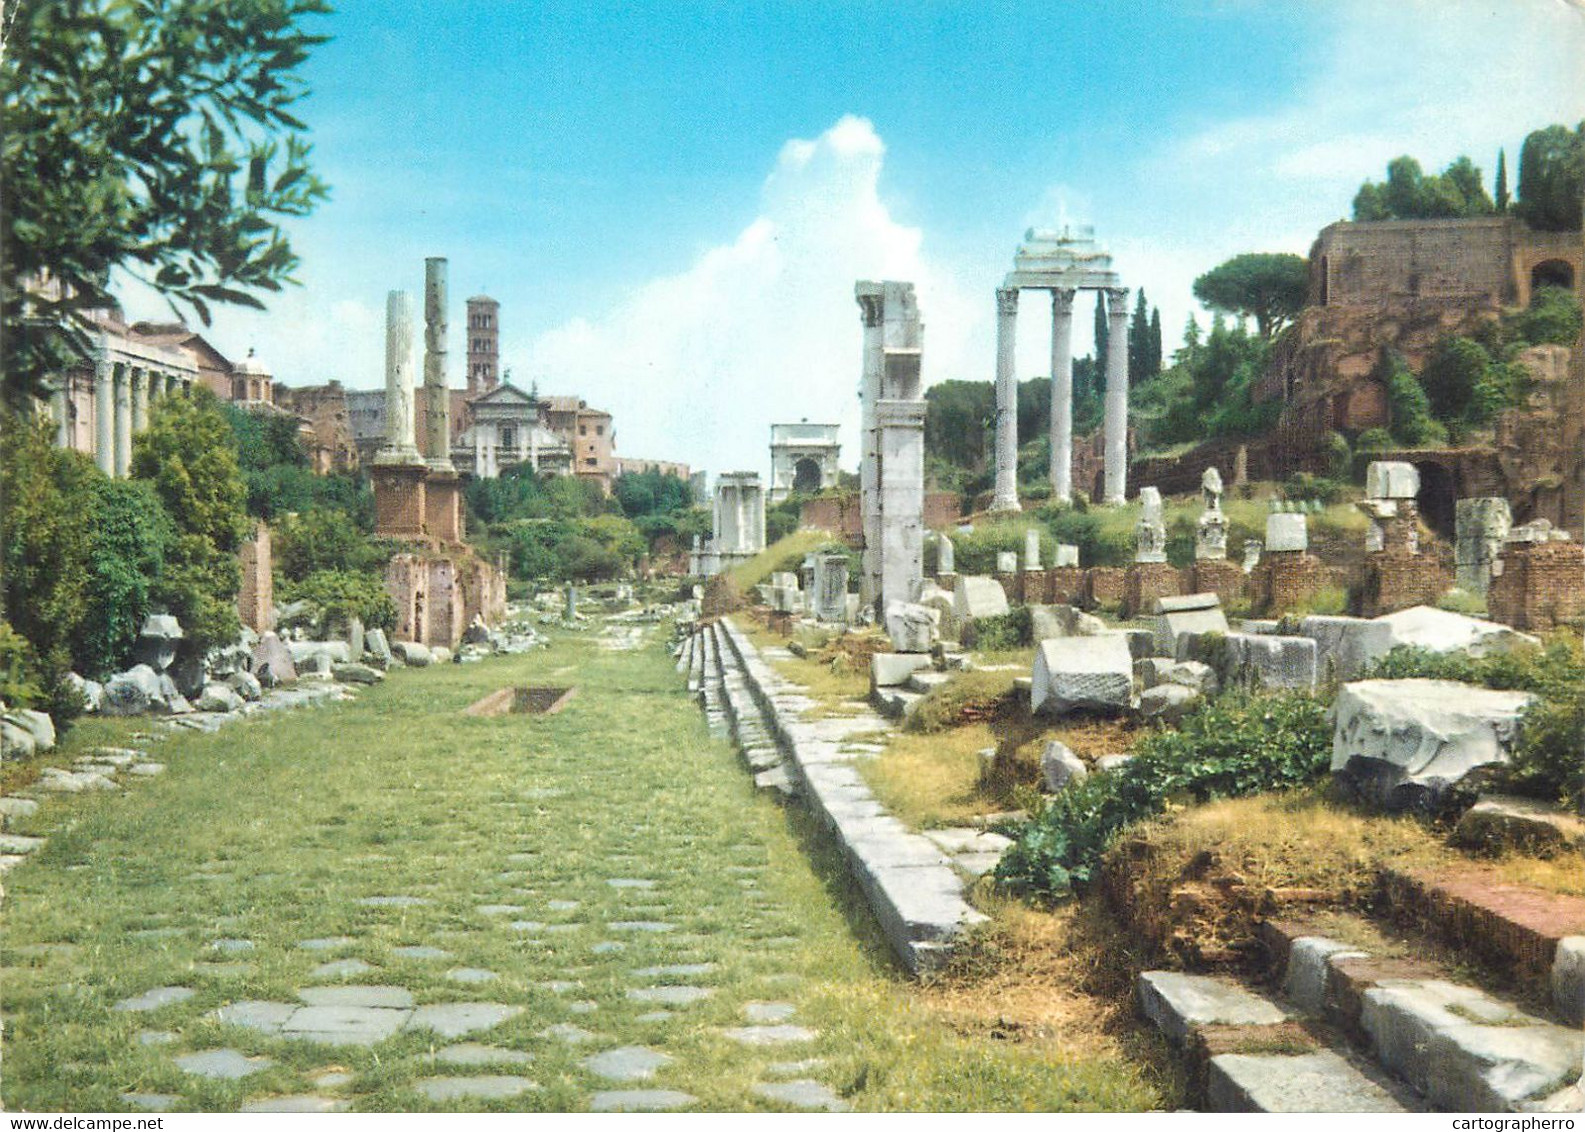 Postcard Italy Rome Roman Forum 1966 - Altare Della Patria